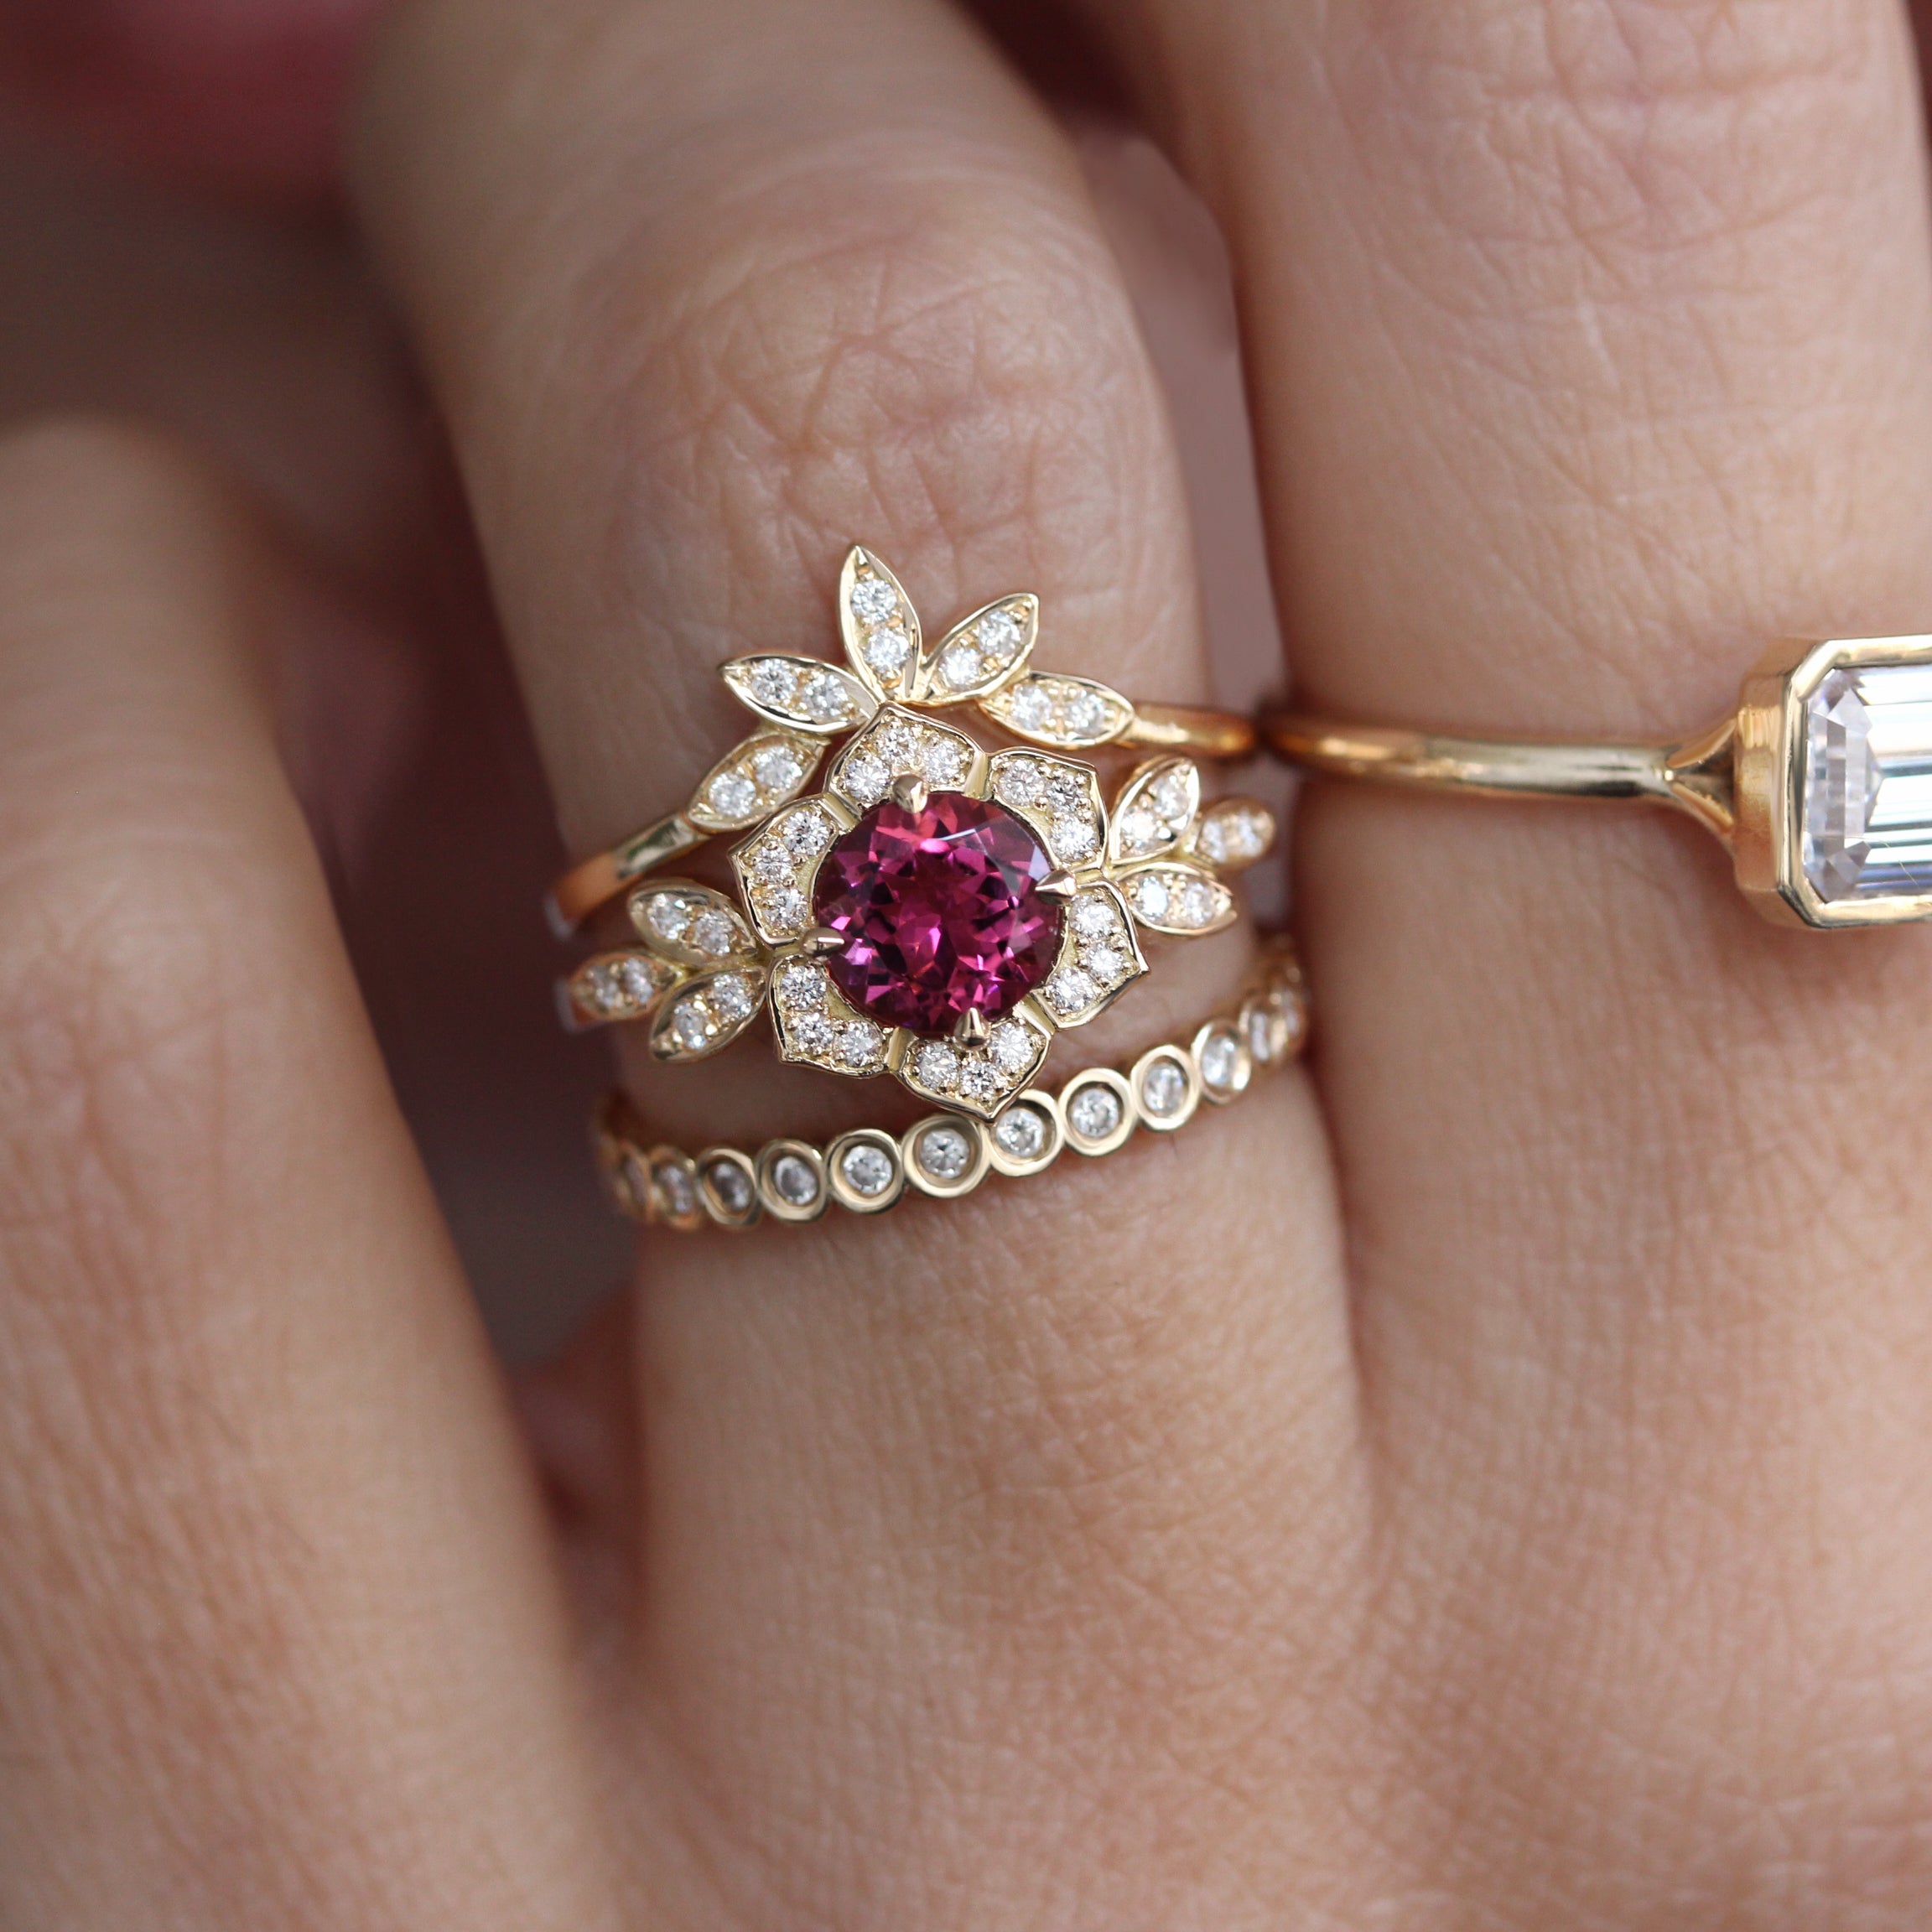 Tourmaline & Diamonds Unique Engagement Ring Set - "Lily Flower"